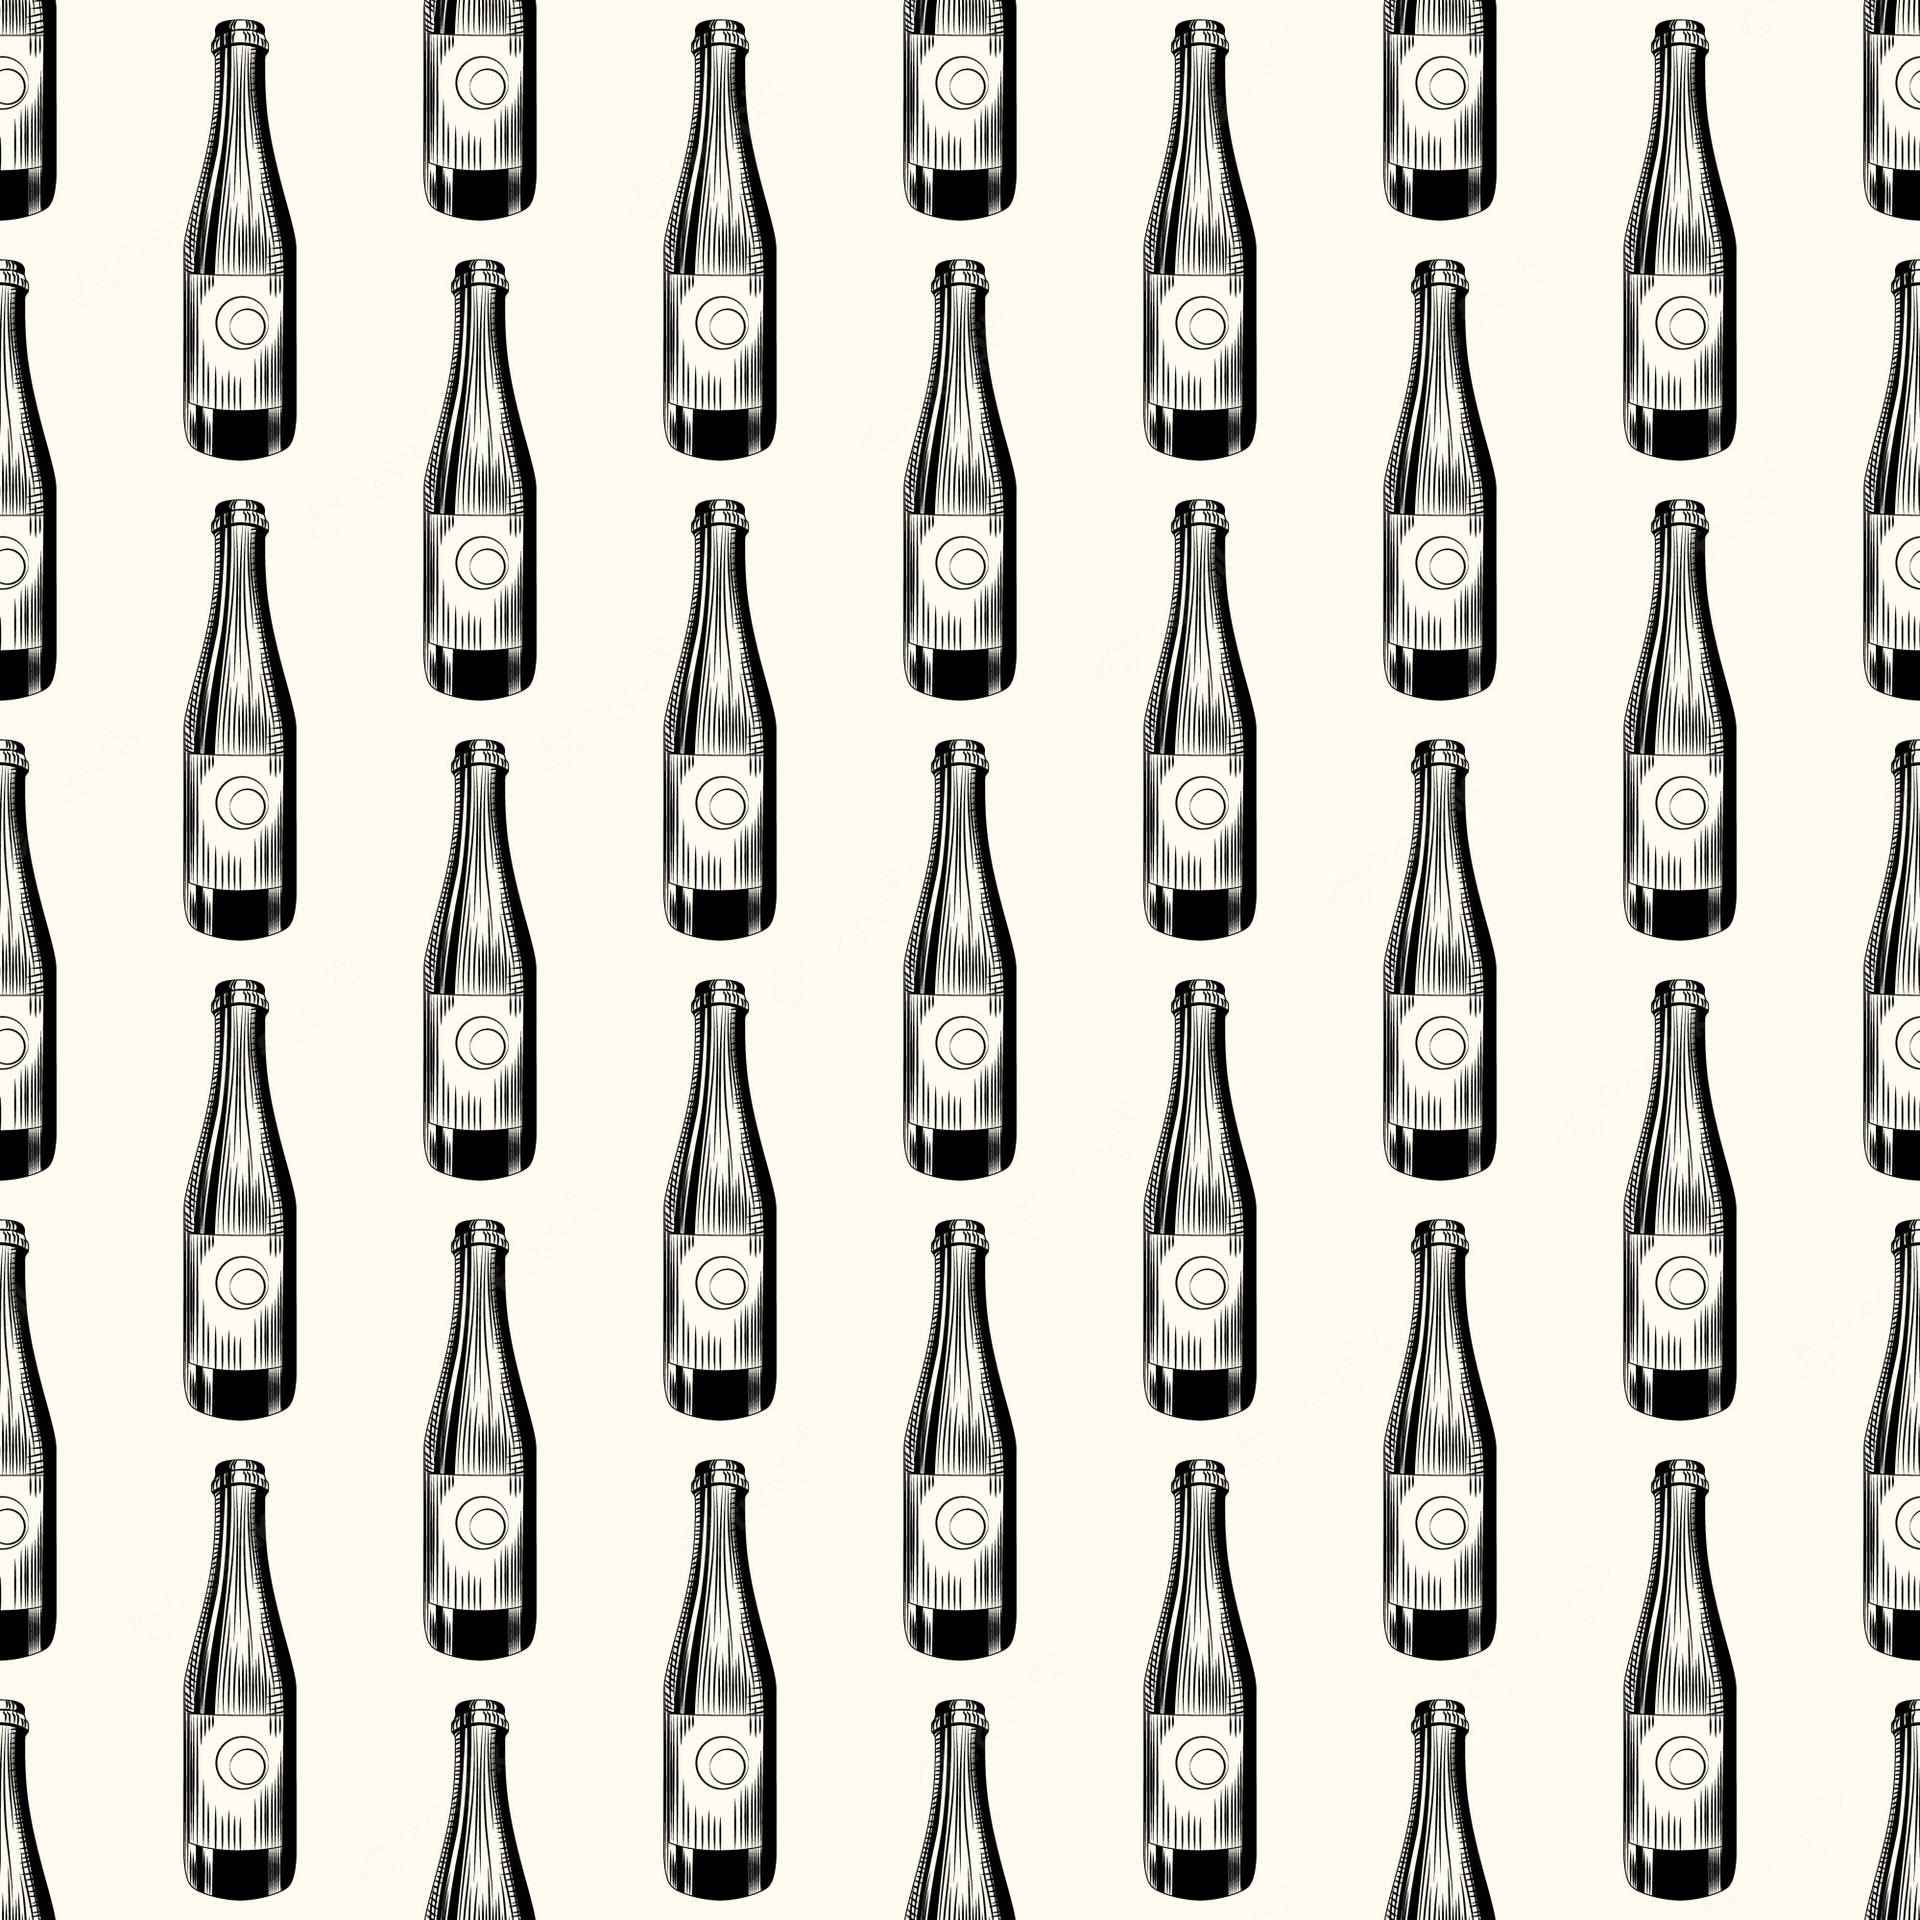 Ilustraciónen Blanco Y Negro De Botellas De Cerveza Fondo de pantalla